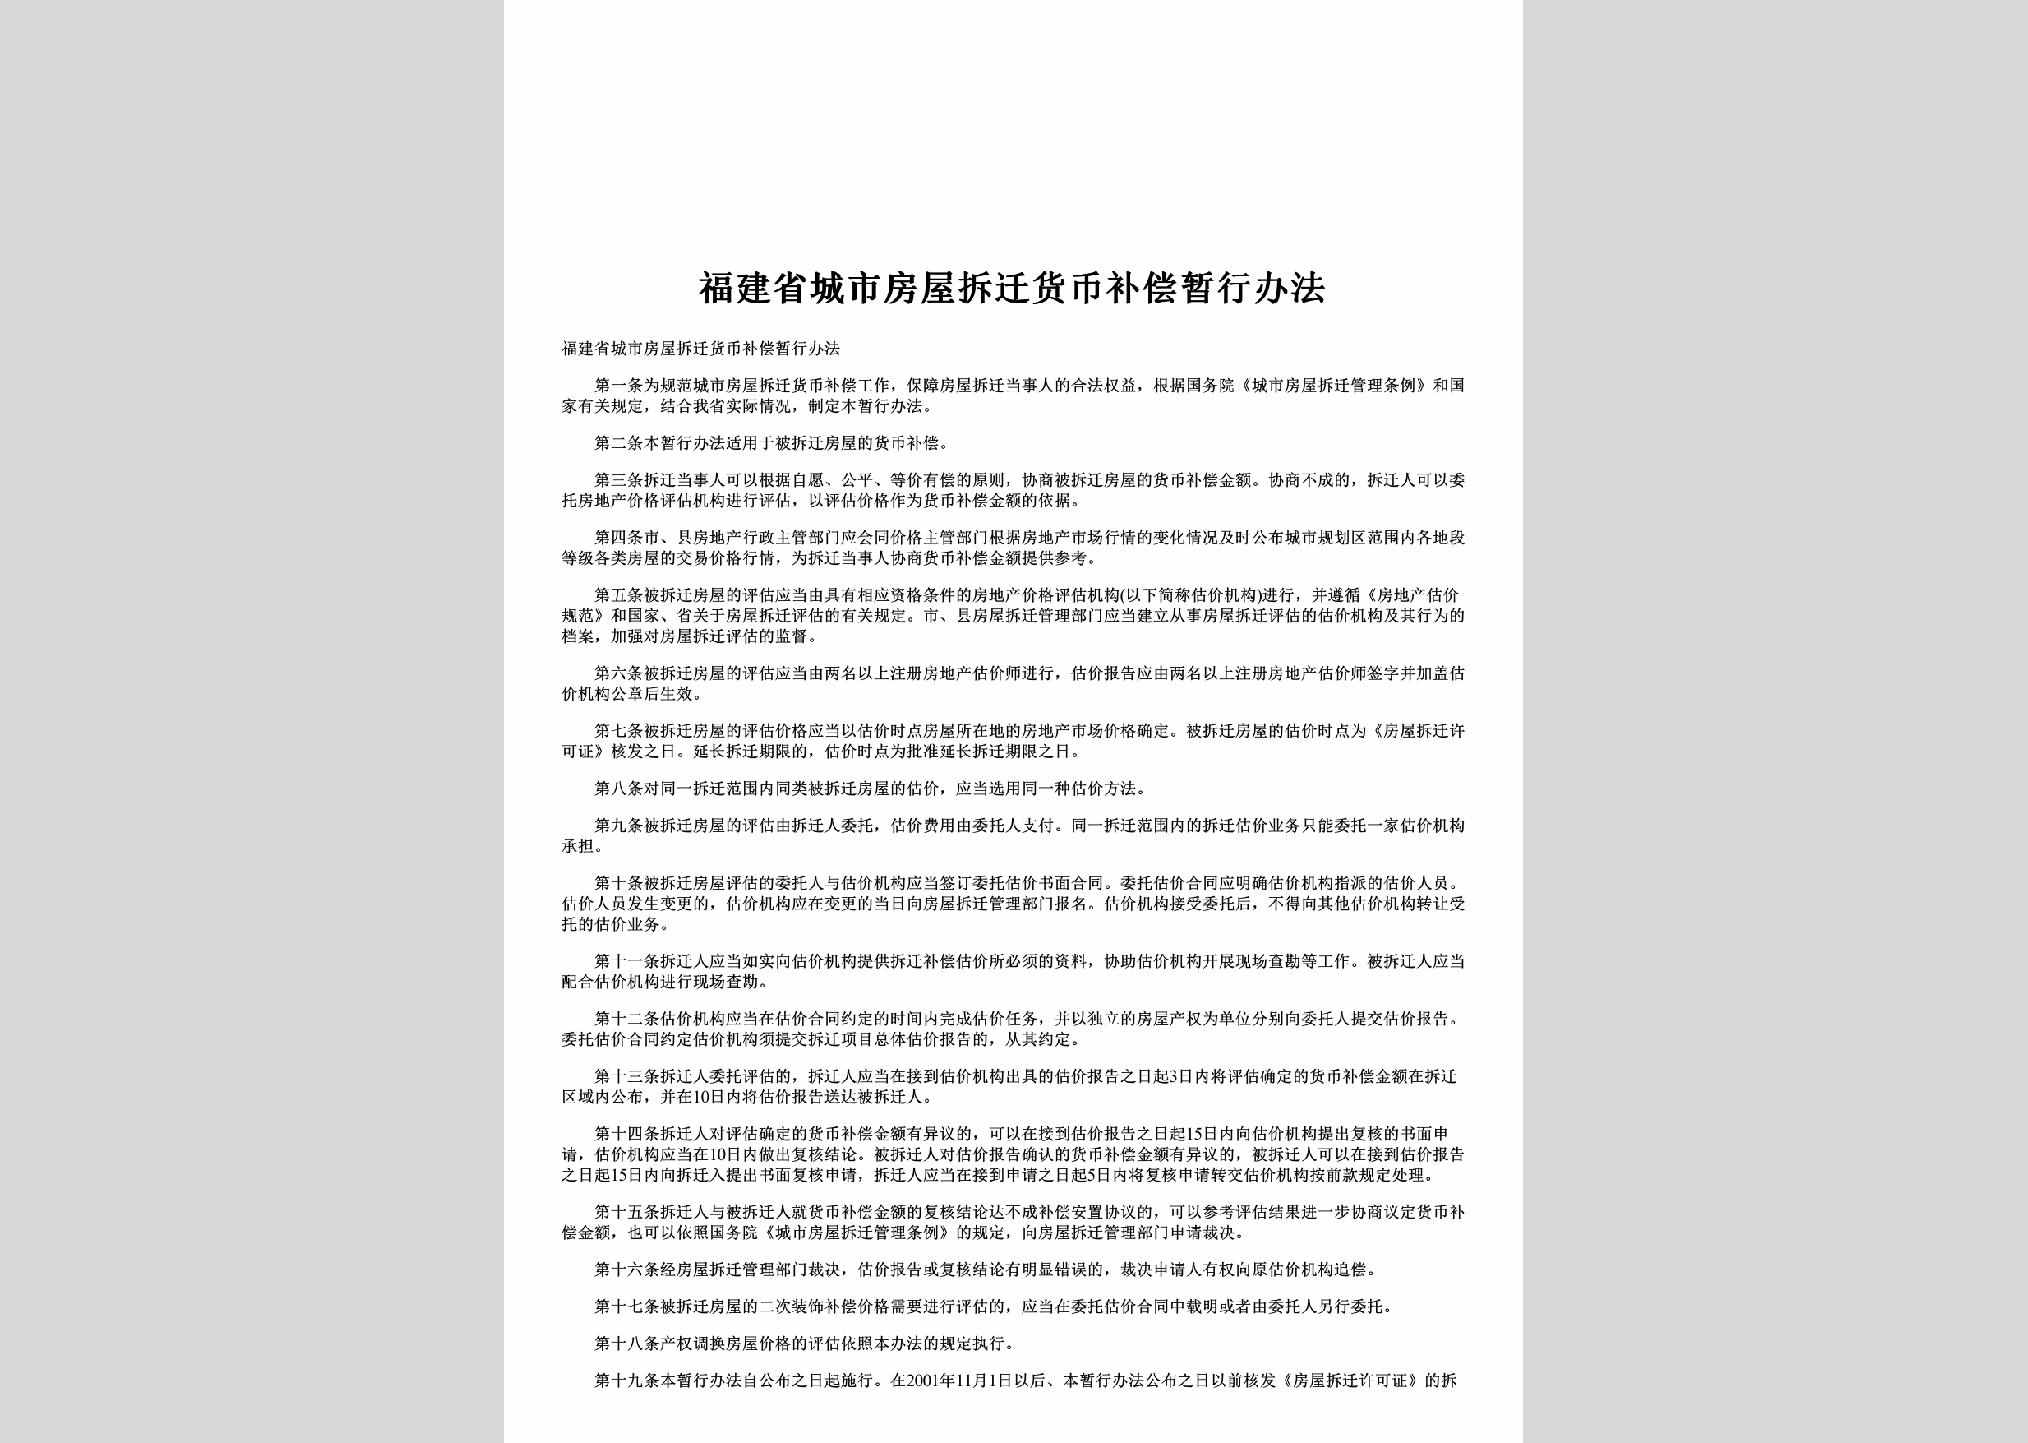 FJ-FWQCHBBC-2002：福建省城市房屋拆迁货币补偿暂行办法